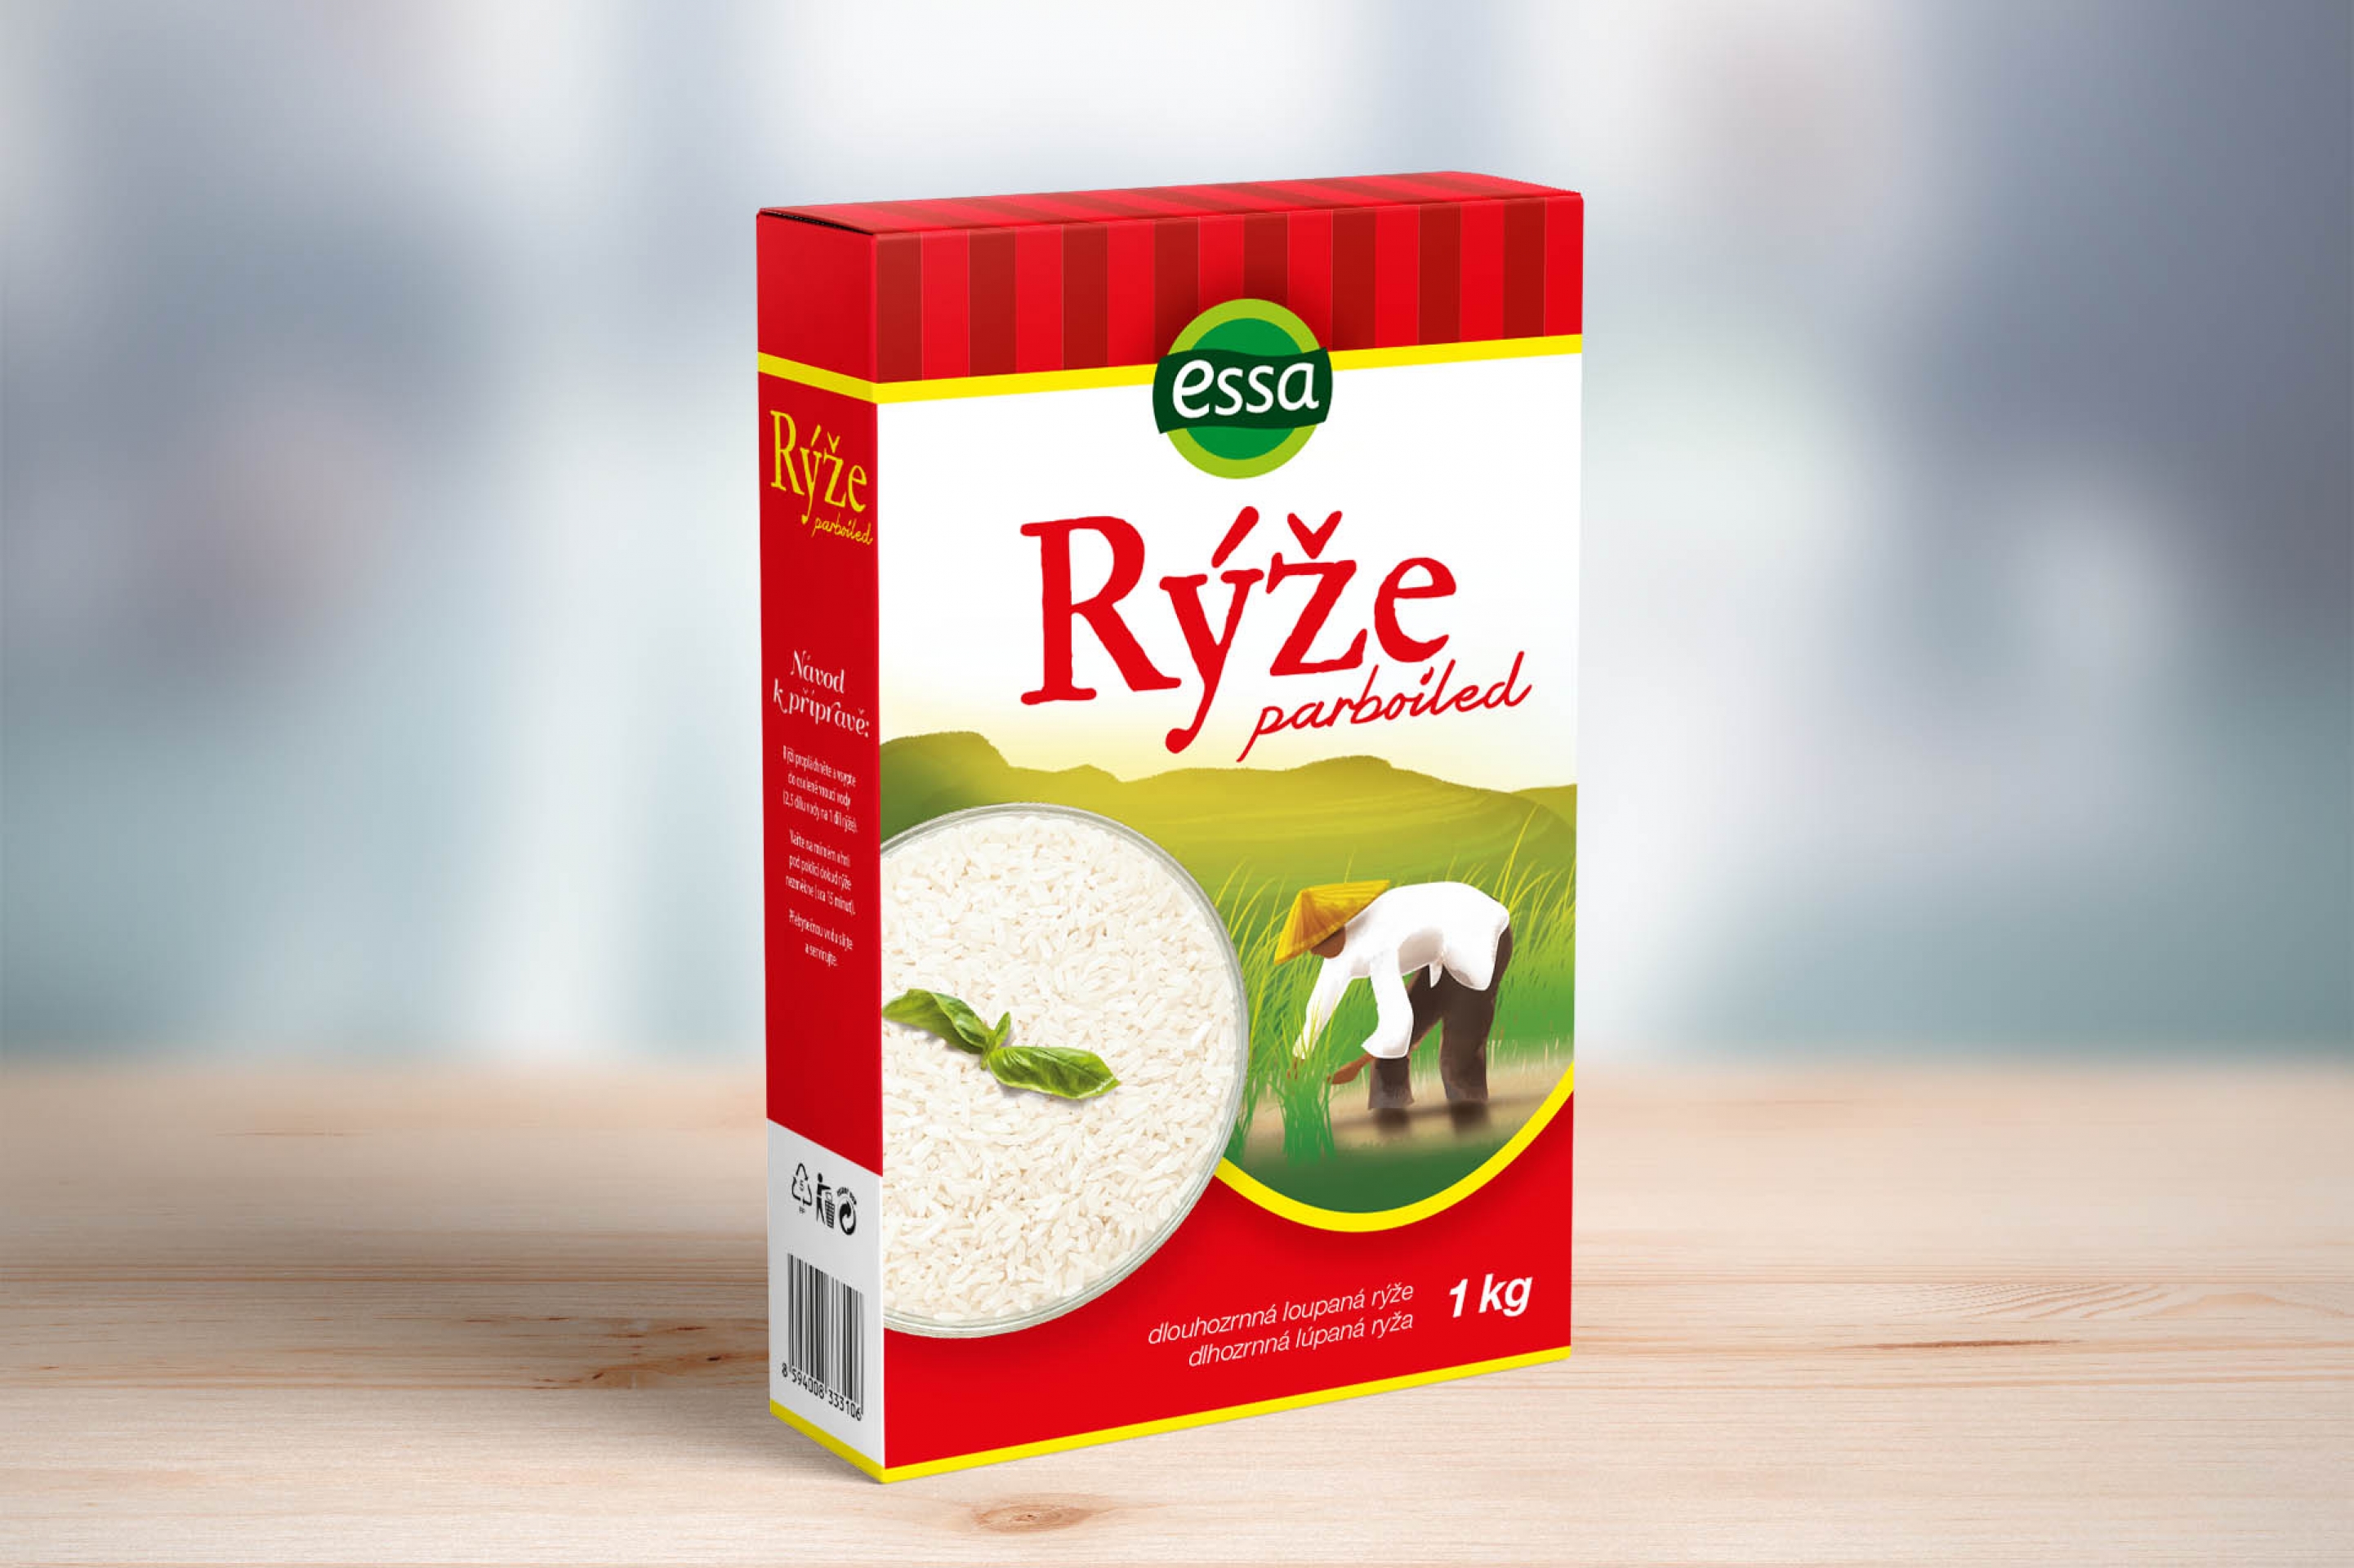 Návrh obalu/krabičky na rýži.